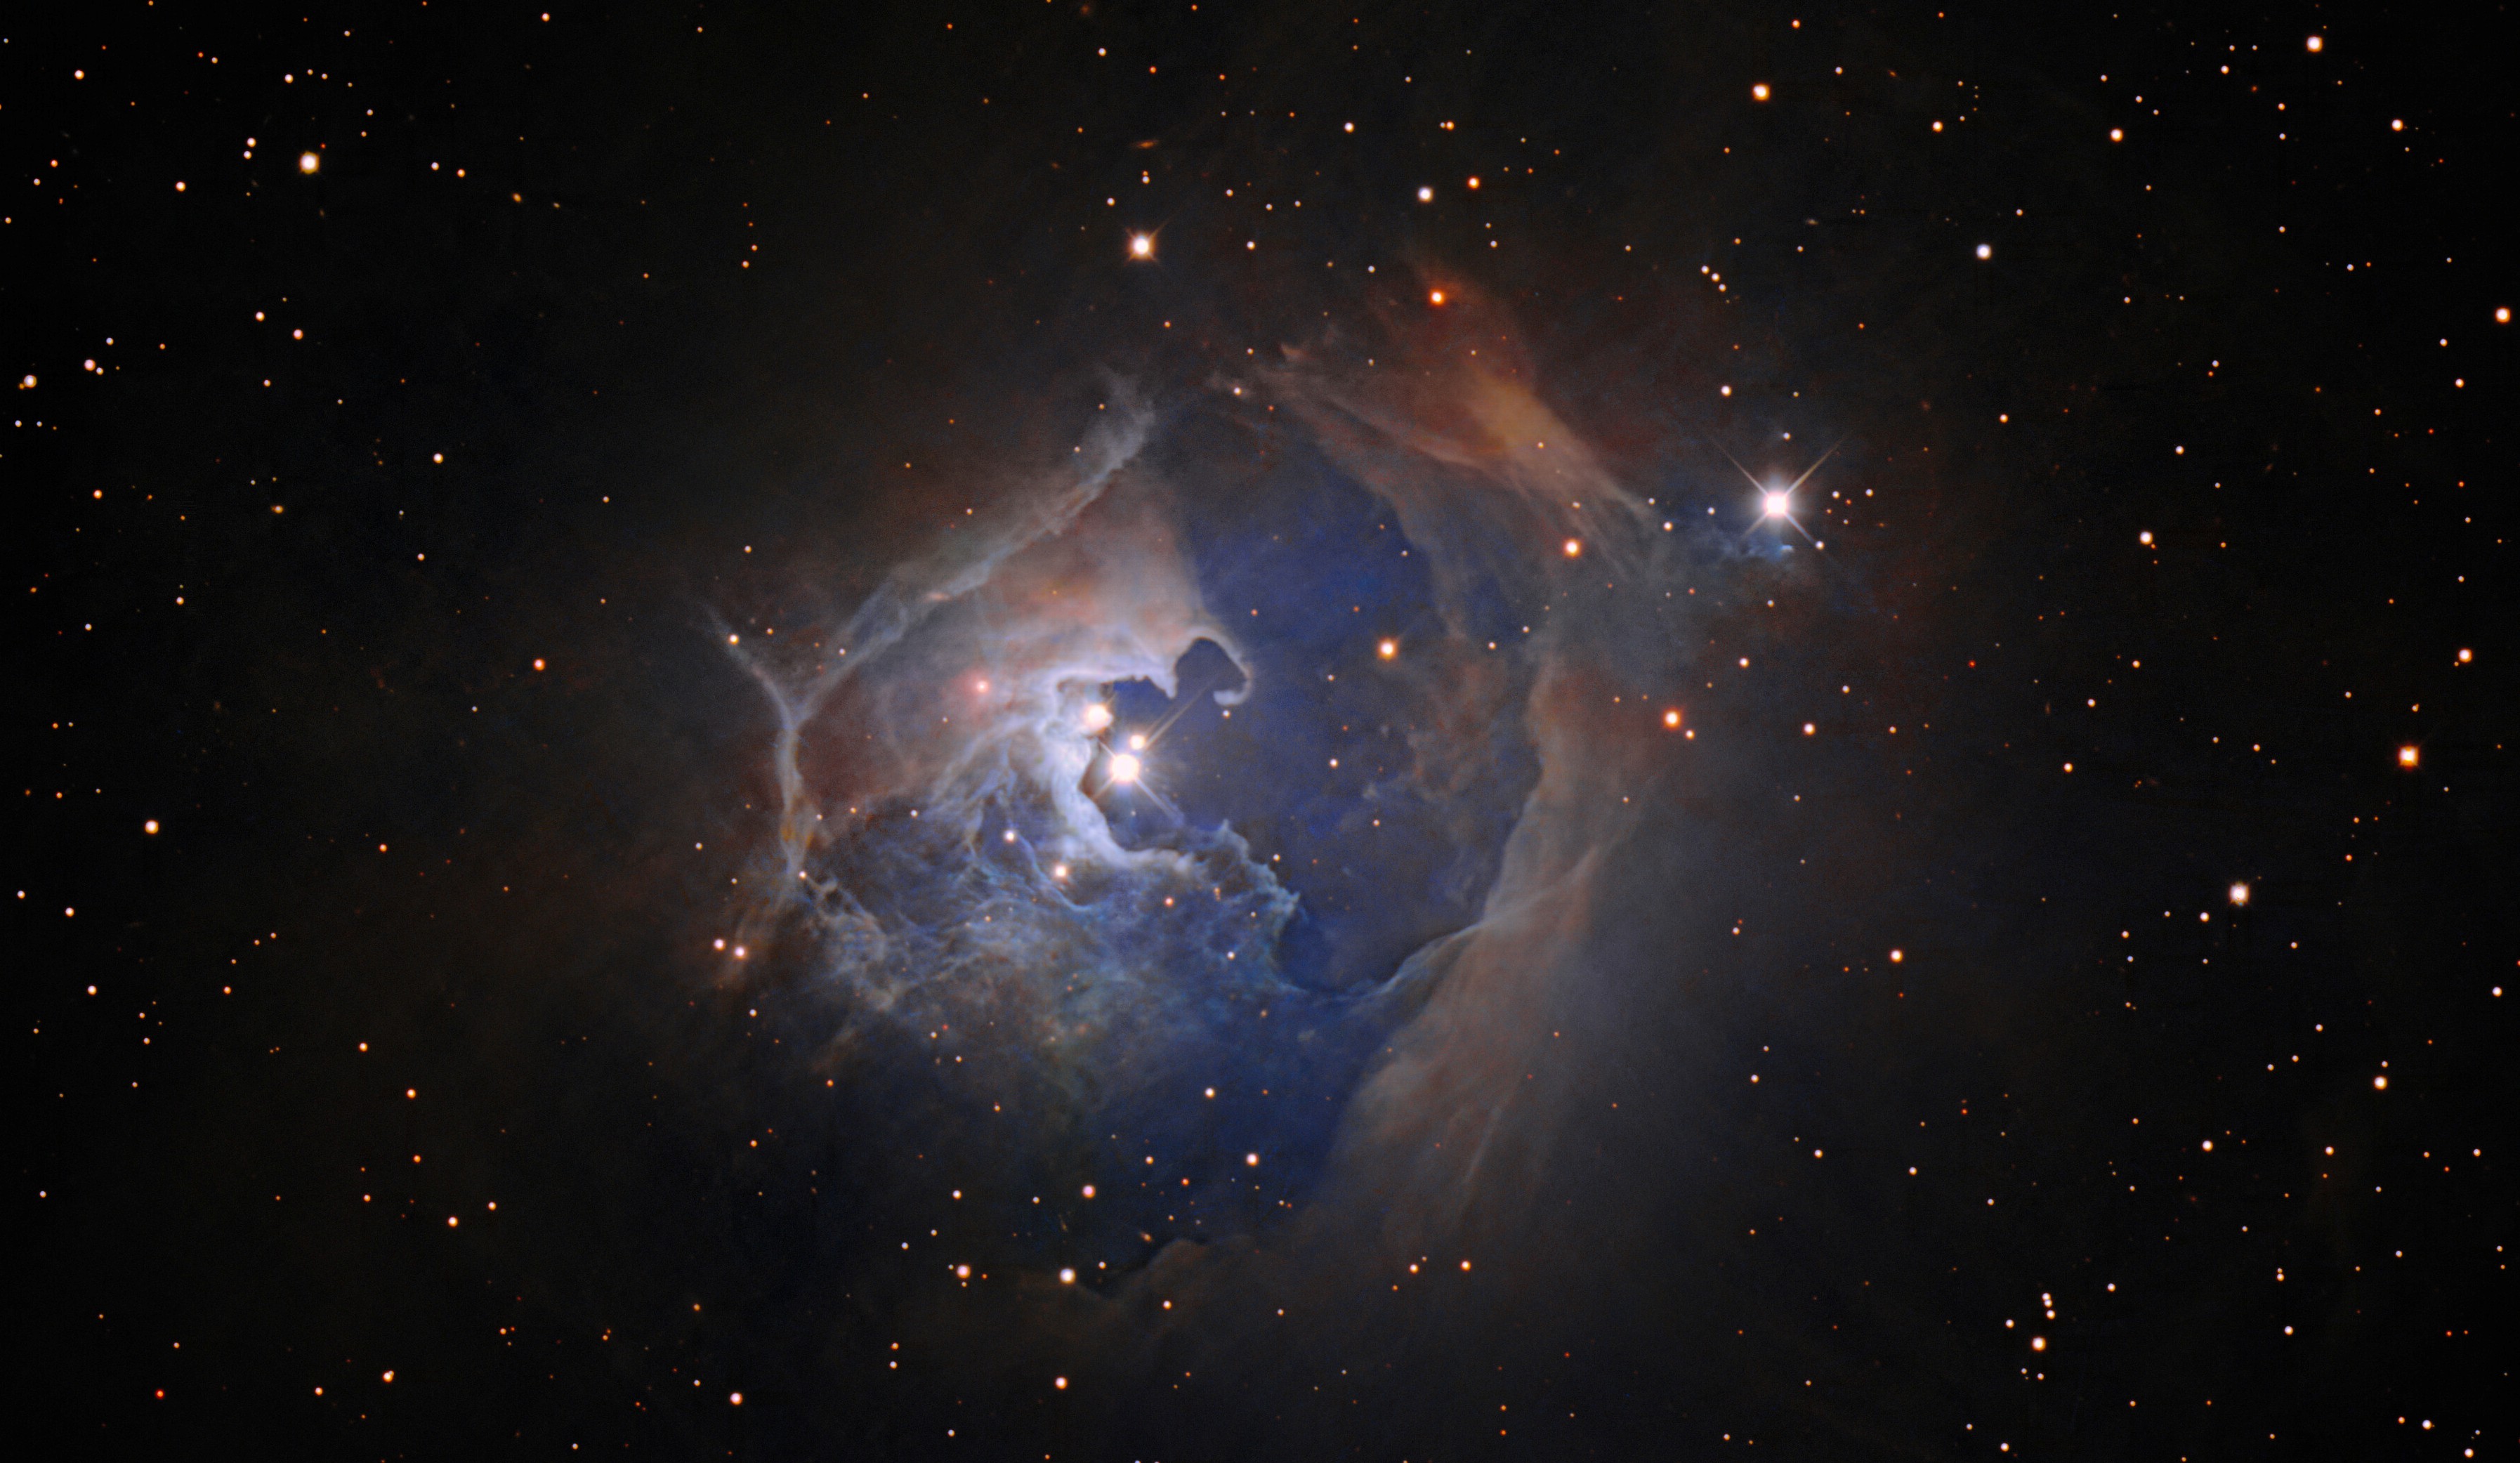 Cette observation capture l'étoile variable HP Tau, située à plus de 550 années-lumière de la Terre dans la constellation du Taureau. Cette image a été créée à l’aide des données du télescope Nicholas U. Mayall de quatre mètres de l’observatoire national de Kitt Peak (KPNO). HP Tau est une étoile T Tauri, un type d'étoile jeune et chaotique qui s'installe dans une phase plus calme de la vie stellaire connue sous le nom de séquence principale. Le temps qu’une étoile passe sur la séquence principale dépendra de sa masse. Notre Soleil, par exemple, est à environ la moitié de la durée de vie de sa séquence principale, d'environ 10 milliards d'années. HP Tau fait partie d'un système à trois étoiles (les trois étoiles distinctes sont visibles au centre de cette image) entouré d'une grande nébuleuse par réflexion en arc. Ces nébuleuses, comme leur nom l'indique, réfléchissent la lumière des étoiles proches plutôt que de briller comme les nébuleuses par émission ailleurs dans l'Univers. © KPNO/NOIRLab/NSF/AURA/T.A. Recteur (NOIRLab de l’Université d’Alaska à Anchorage/NSF). Traitement d'images : T.A. Recteur (NOIRLab de l’Université d’Alaska à Anchorage/NSF), M. Zamani (NOIRLab de NSF) et D. de Martin (NOIRLab de NSF)